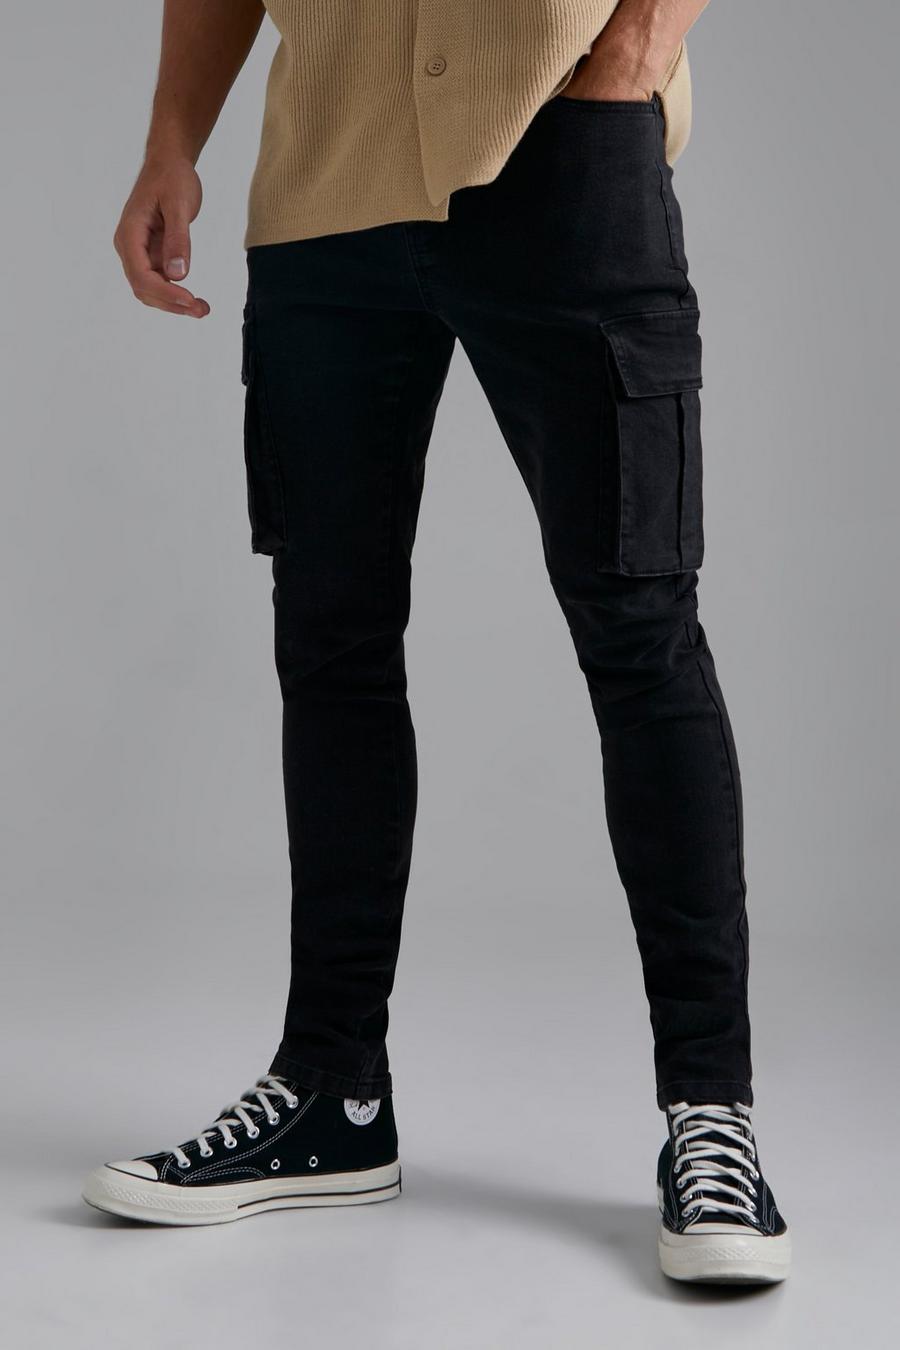 שחור דהוי ג'ינס סקיני דגמ"ח נמתח, לגברים גבוהים image number 1